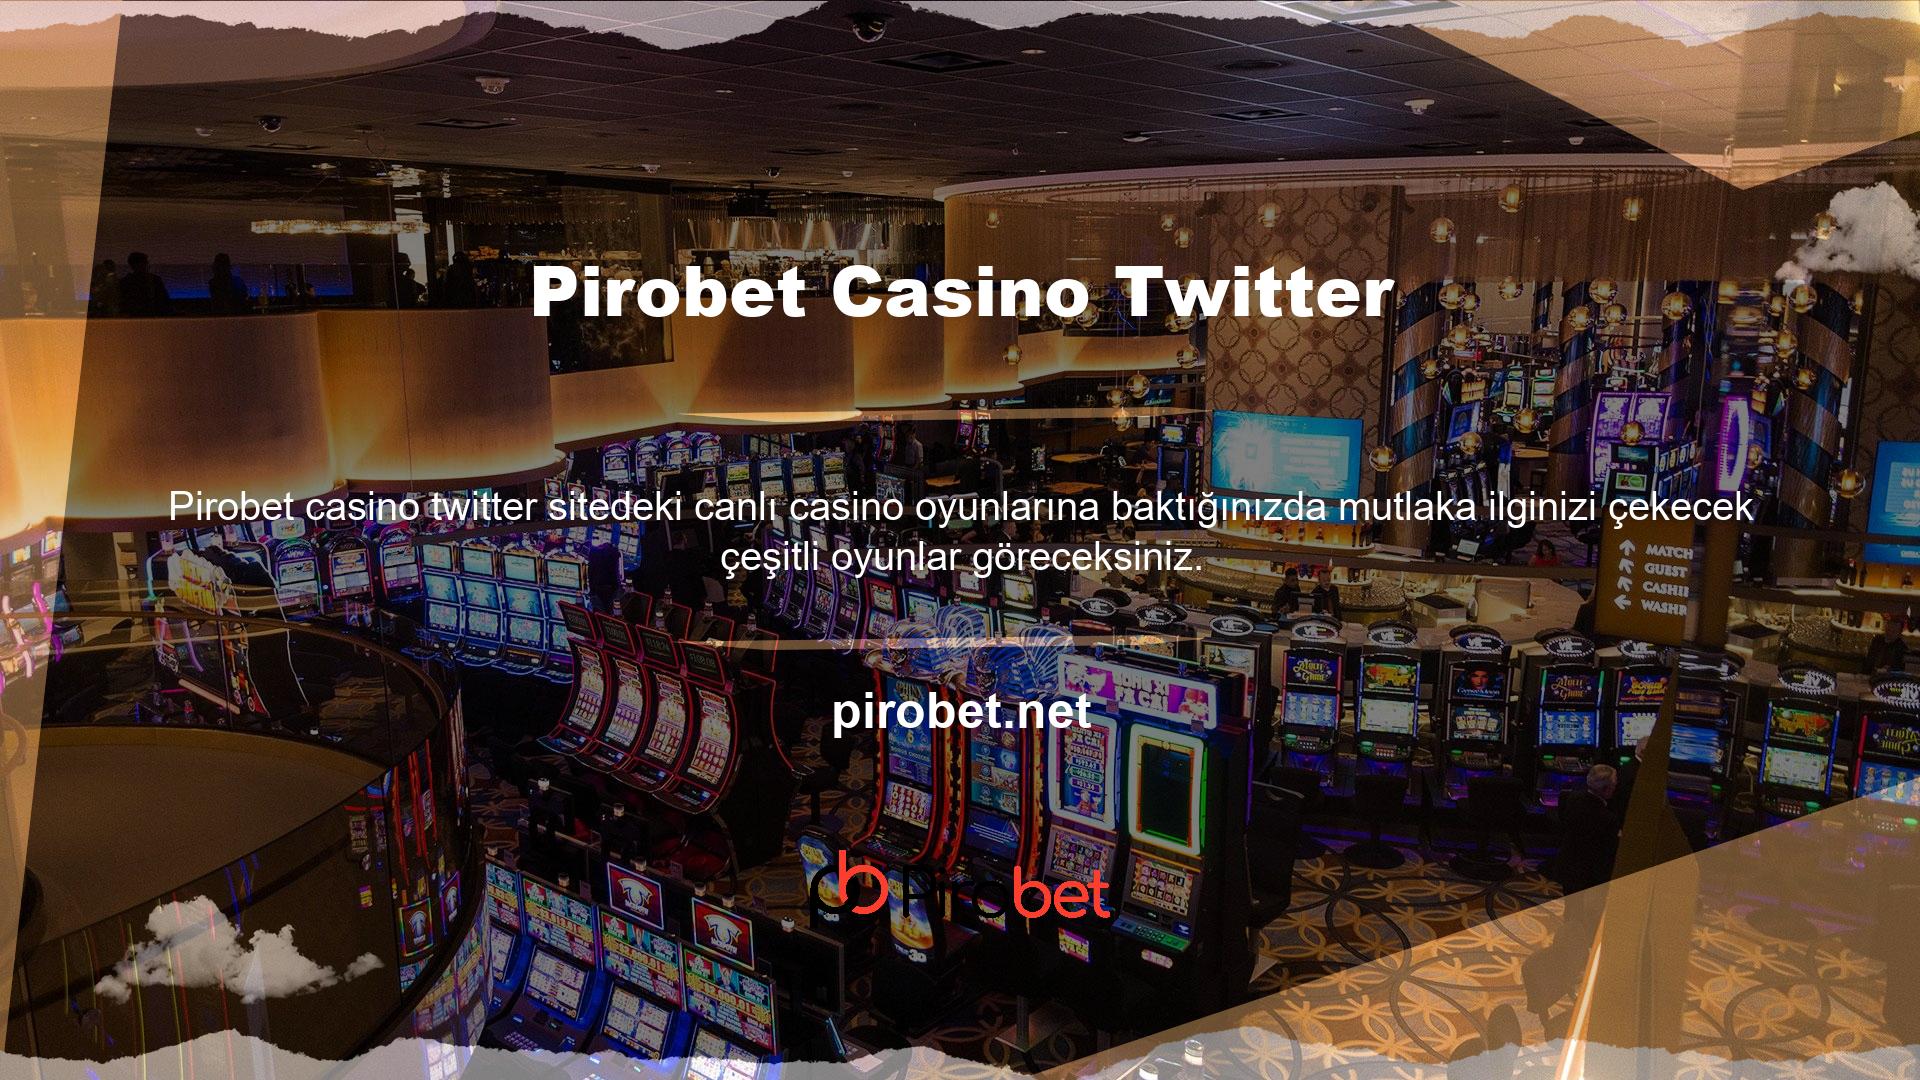 Pirobet canlı casino tecrübeli oldukları ve kazanç hakkında konuşabildikleri için kazanırlar